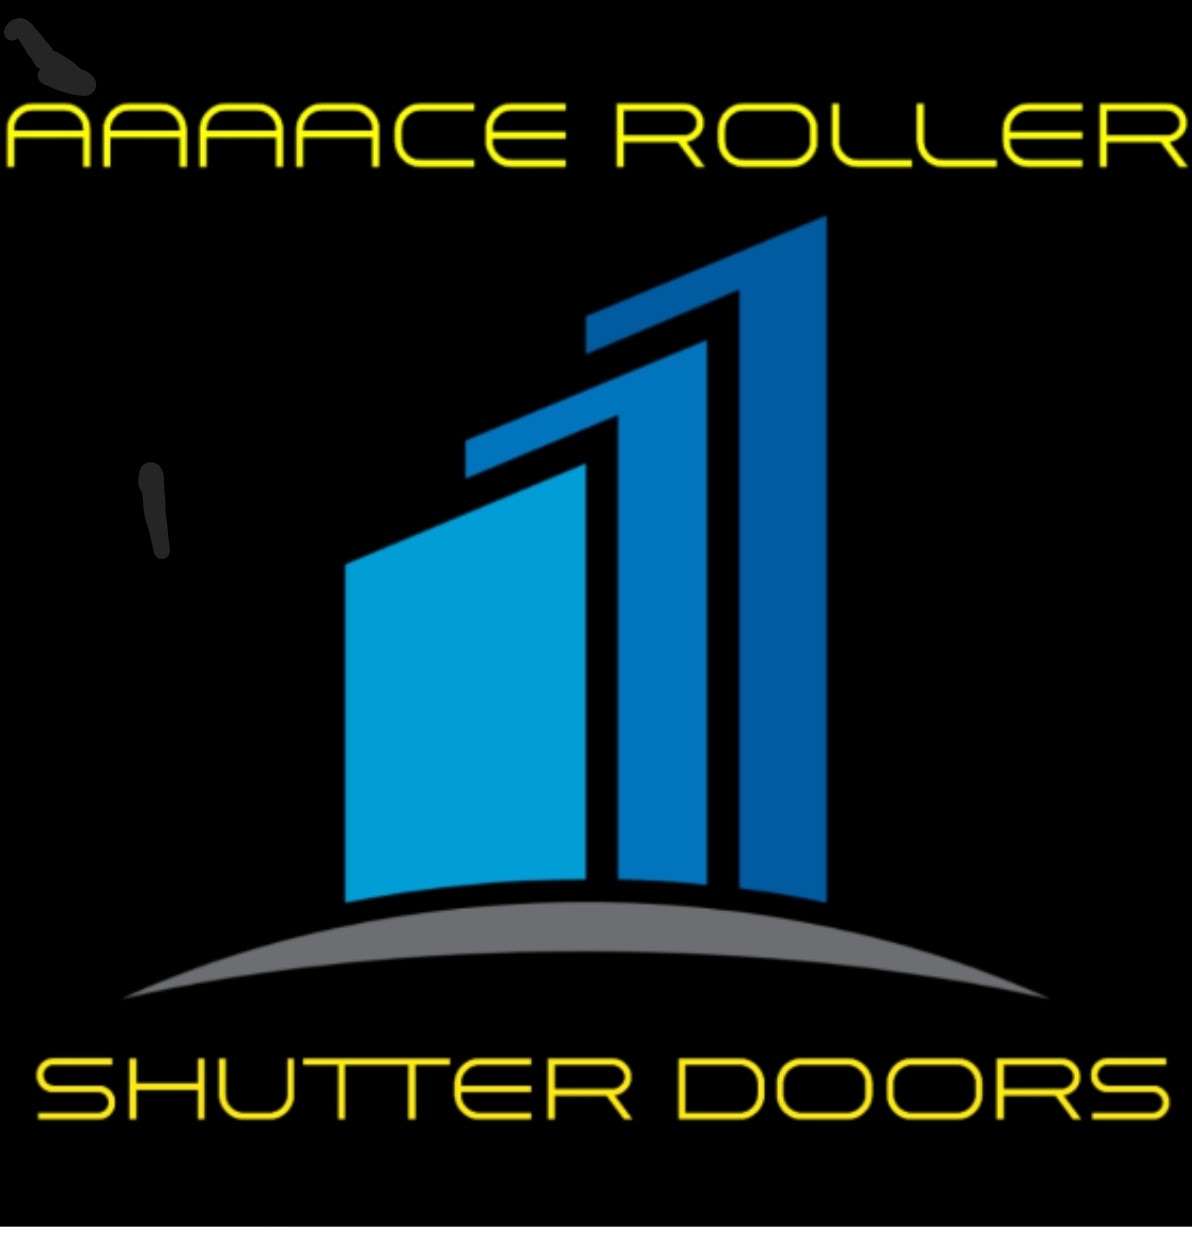 Aaaace Roller Shutter Doors logo